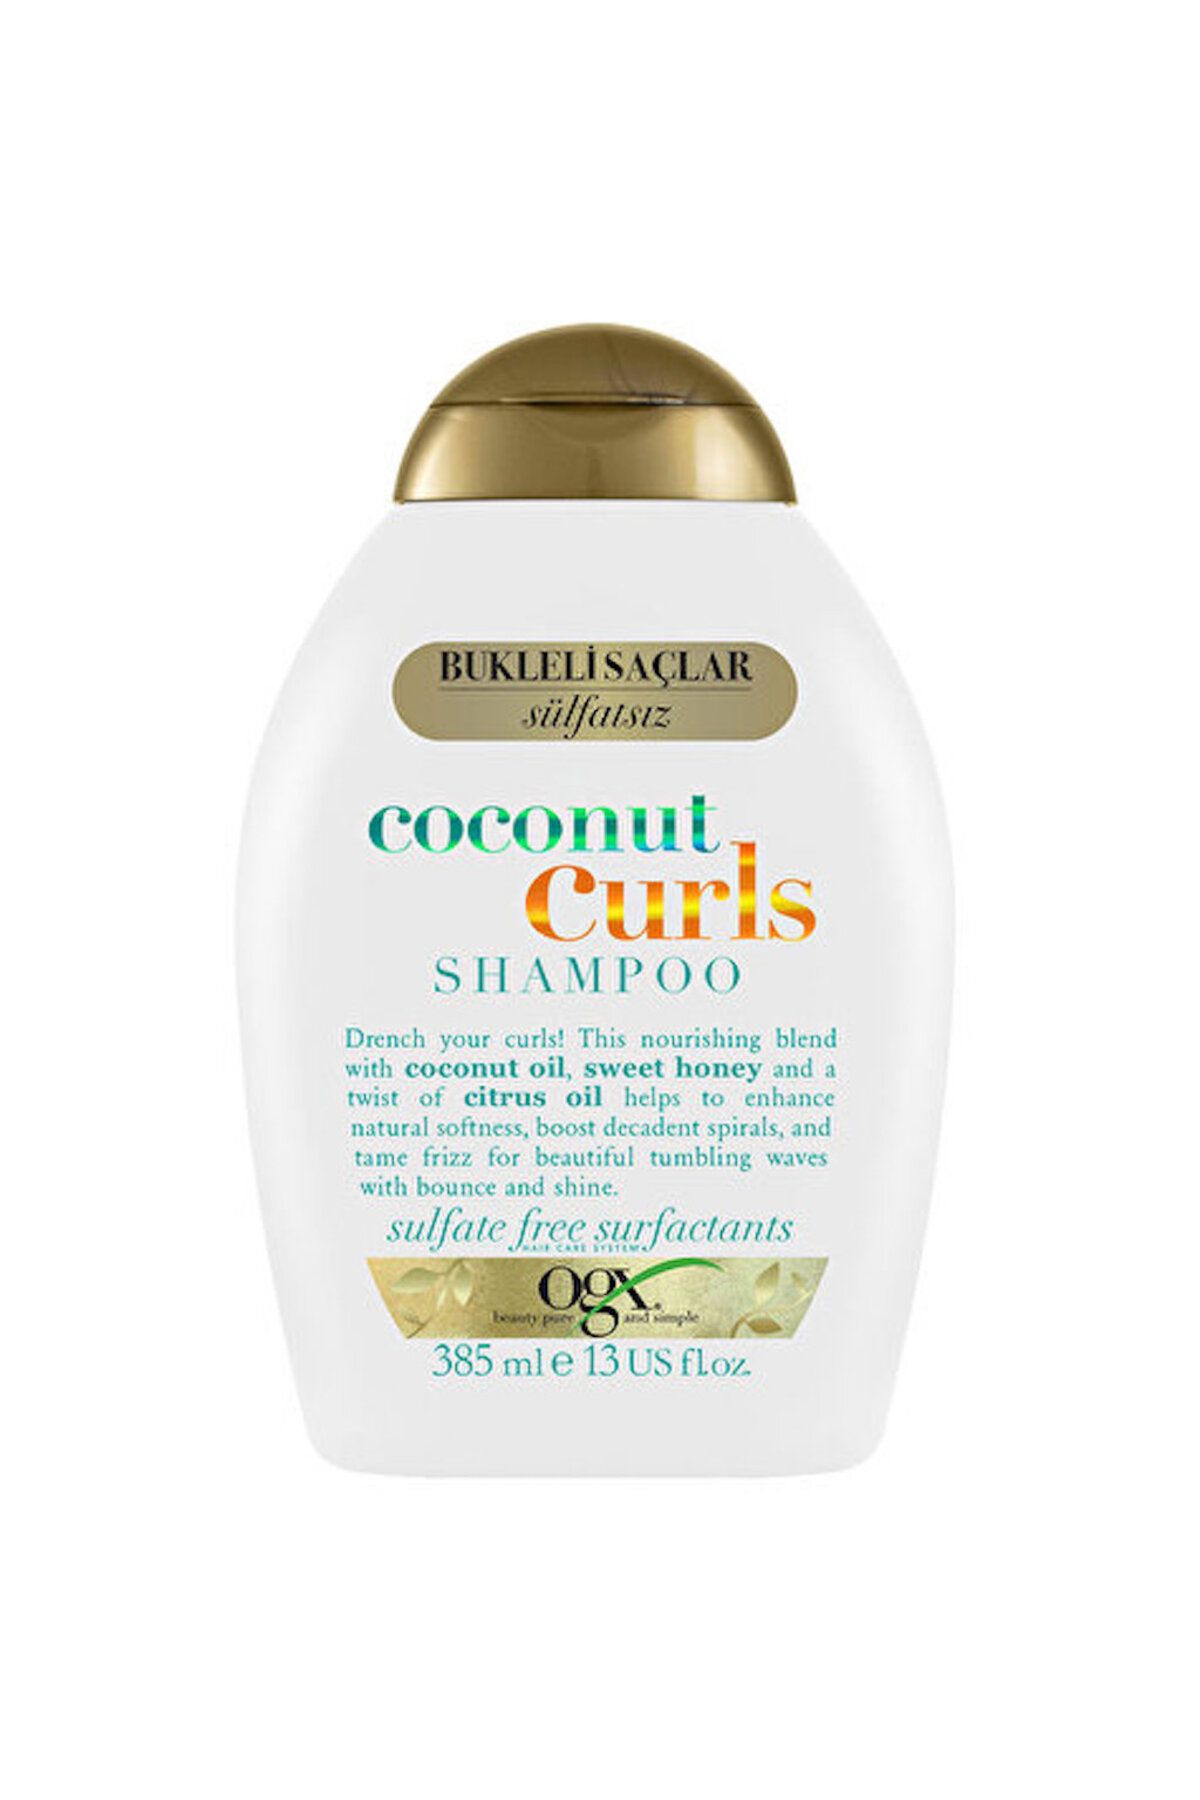 OGX Bukleli Saçlar Şampuan-Ogx Bukleli Saçlar için Nemlendirici Coconut Curls Şampuan 385 ml